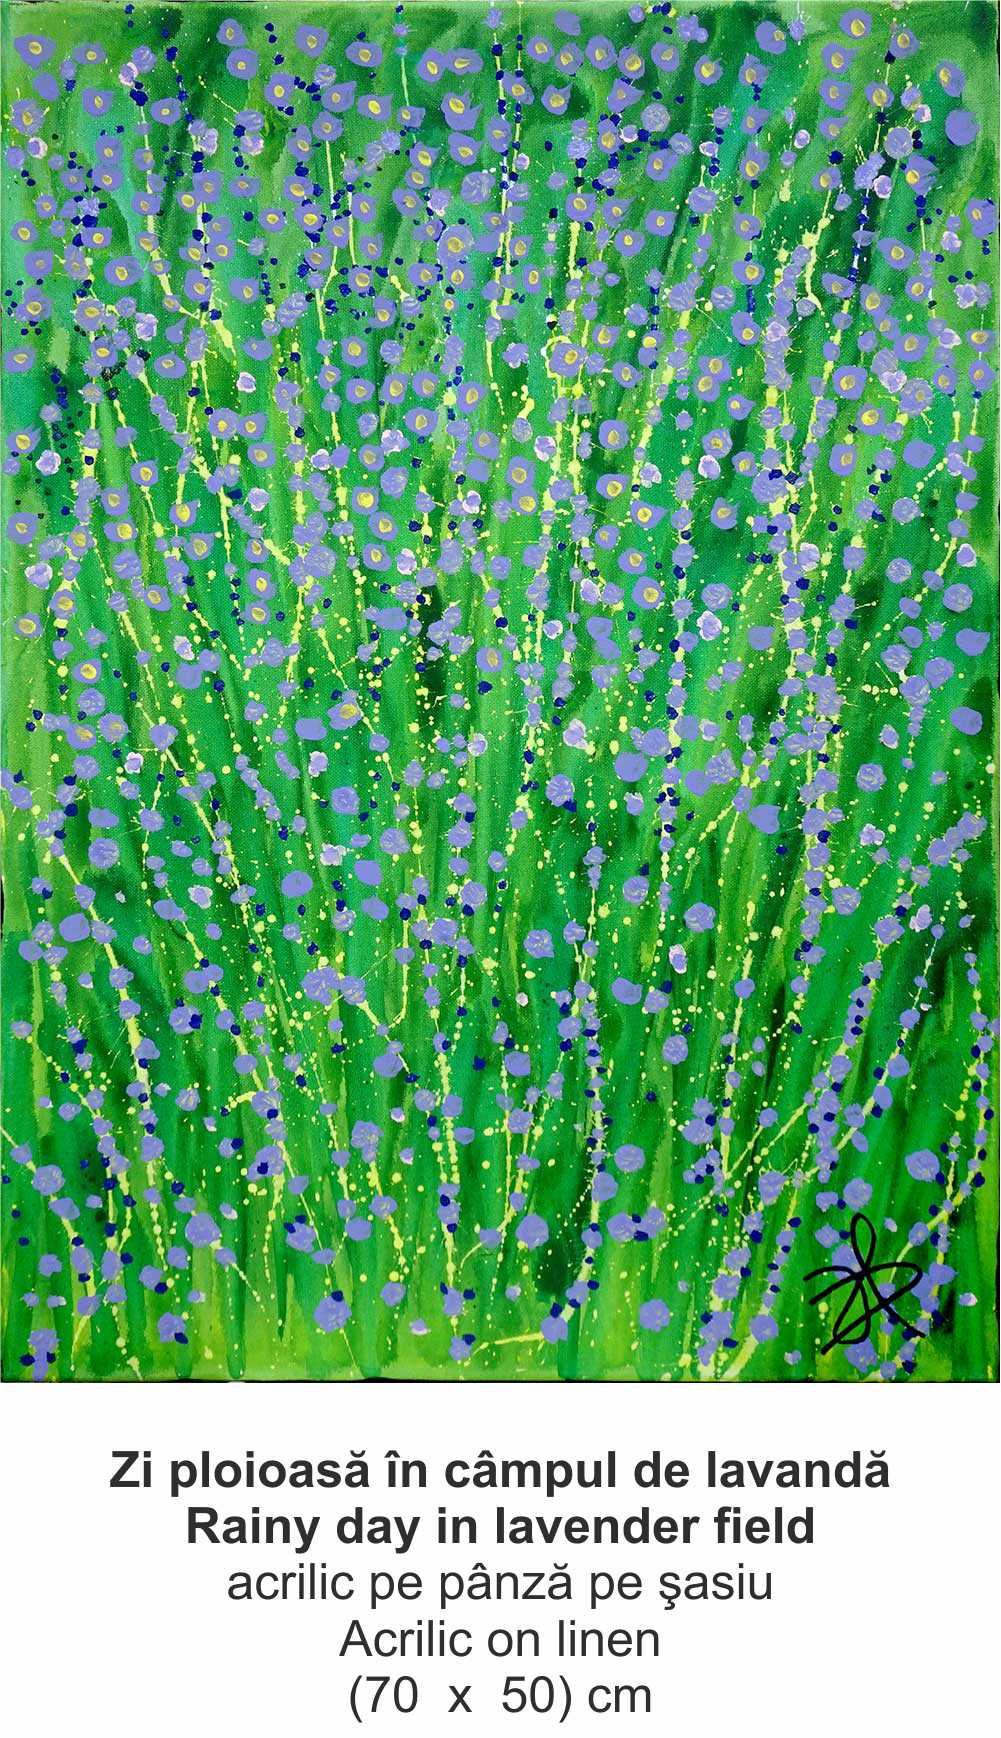 „Zi ploioasă în câmpul de lavandă” („Rainy day in lavender field”) - acrilic pe pânză pe şasiu (Acrilic on linen) - (70  x  50) cm - img 46